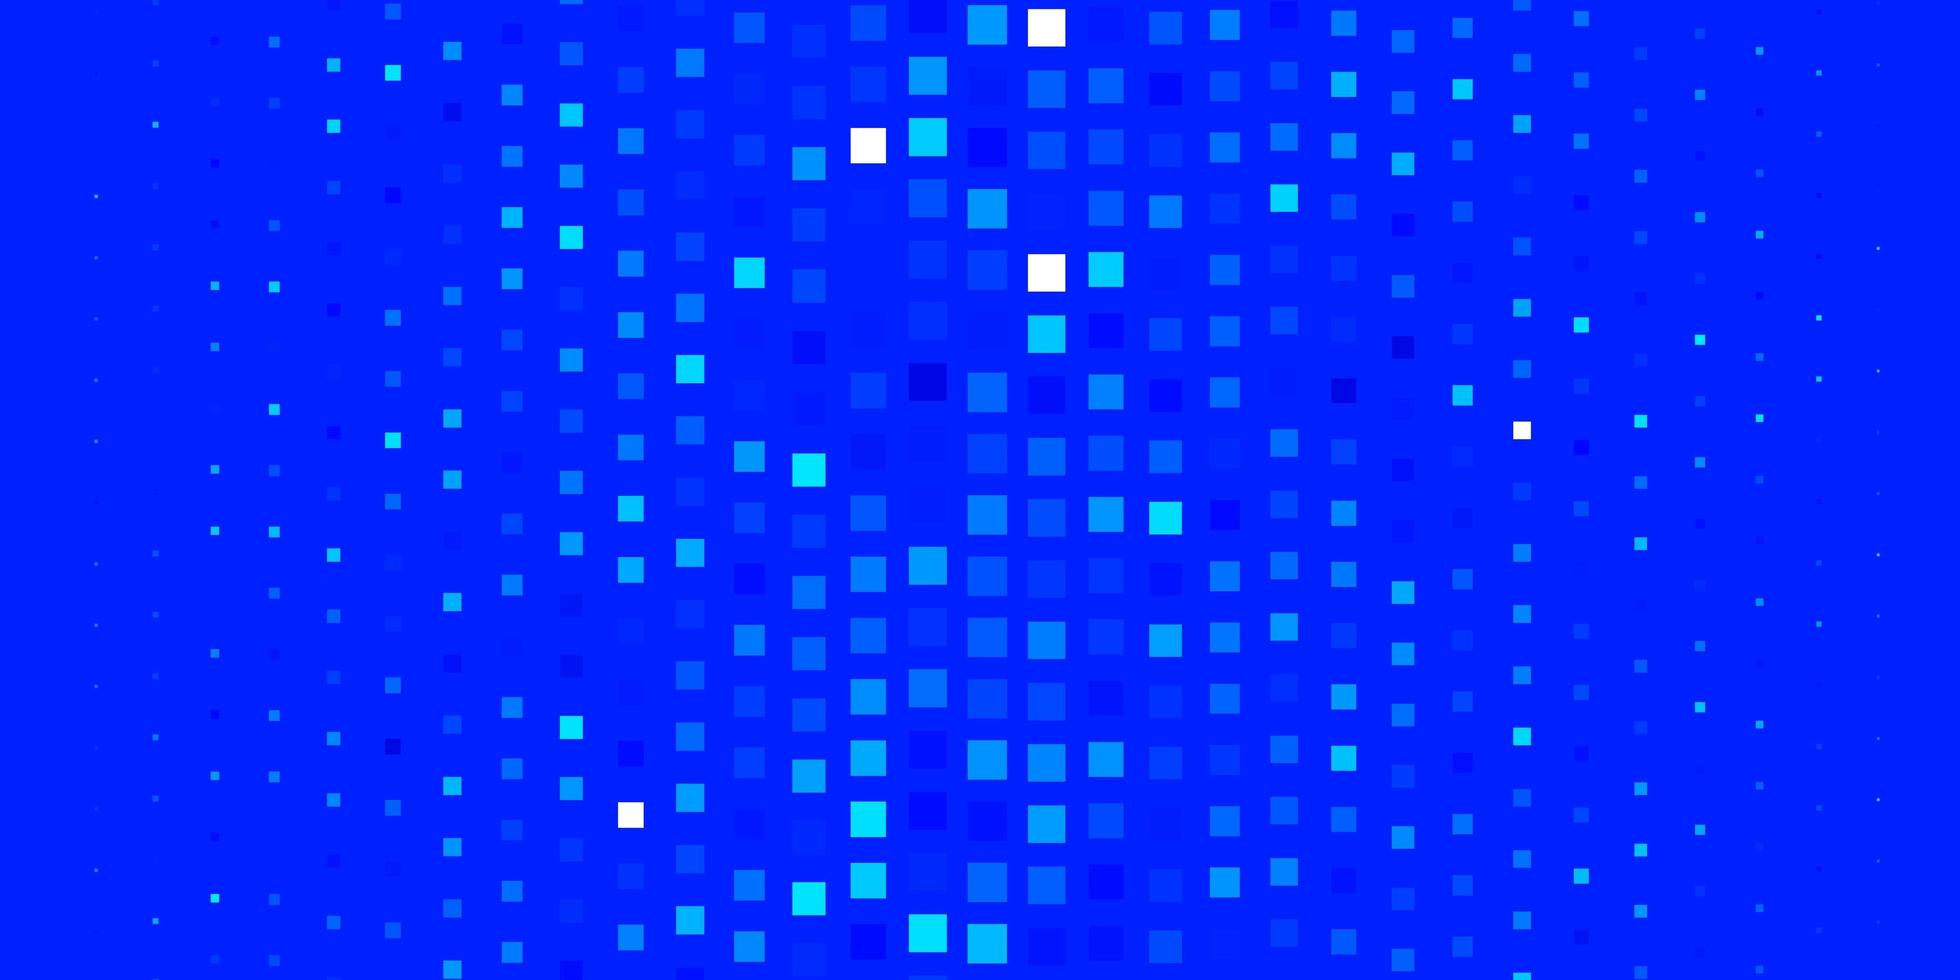 modello vettoriale azzurro in rettangoli.